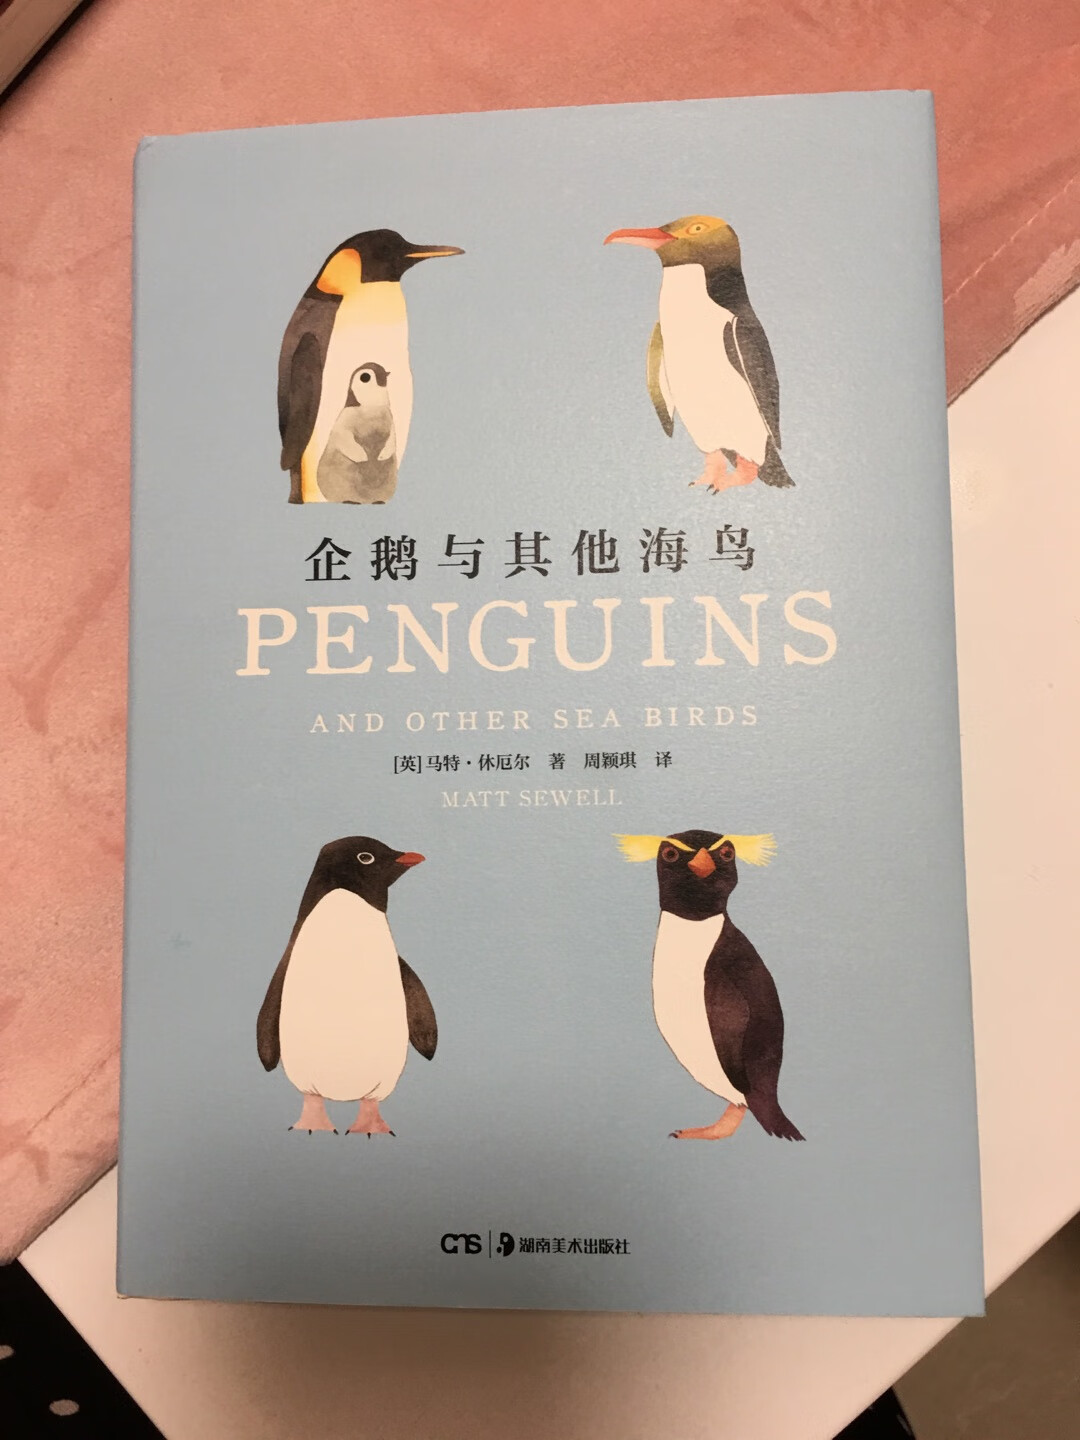 很漂亮的一本书，里面画的各种鸟也不错，大人小孩都可以看的，值得购买。